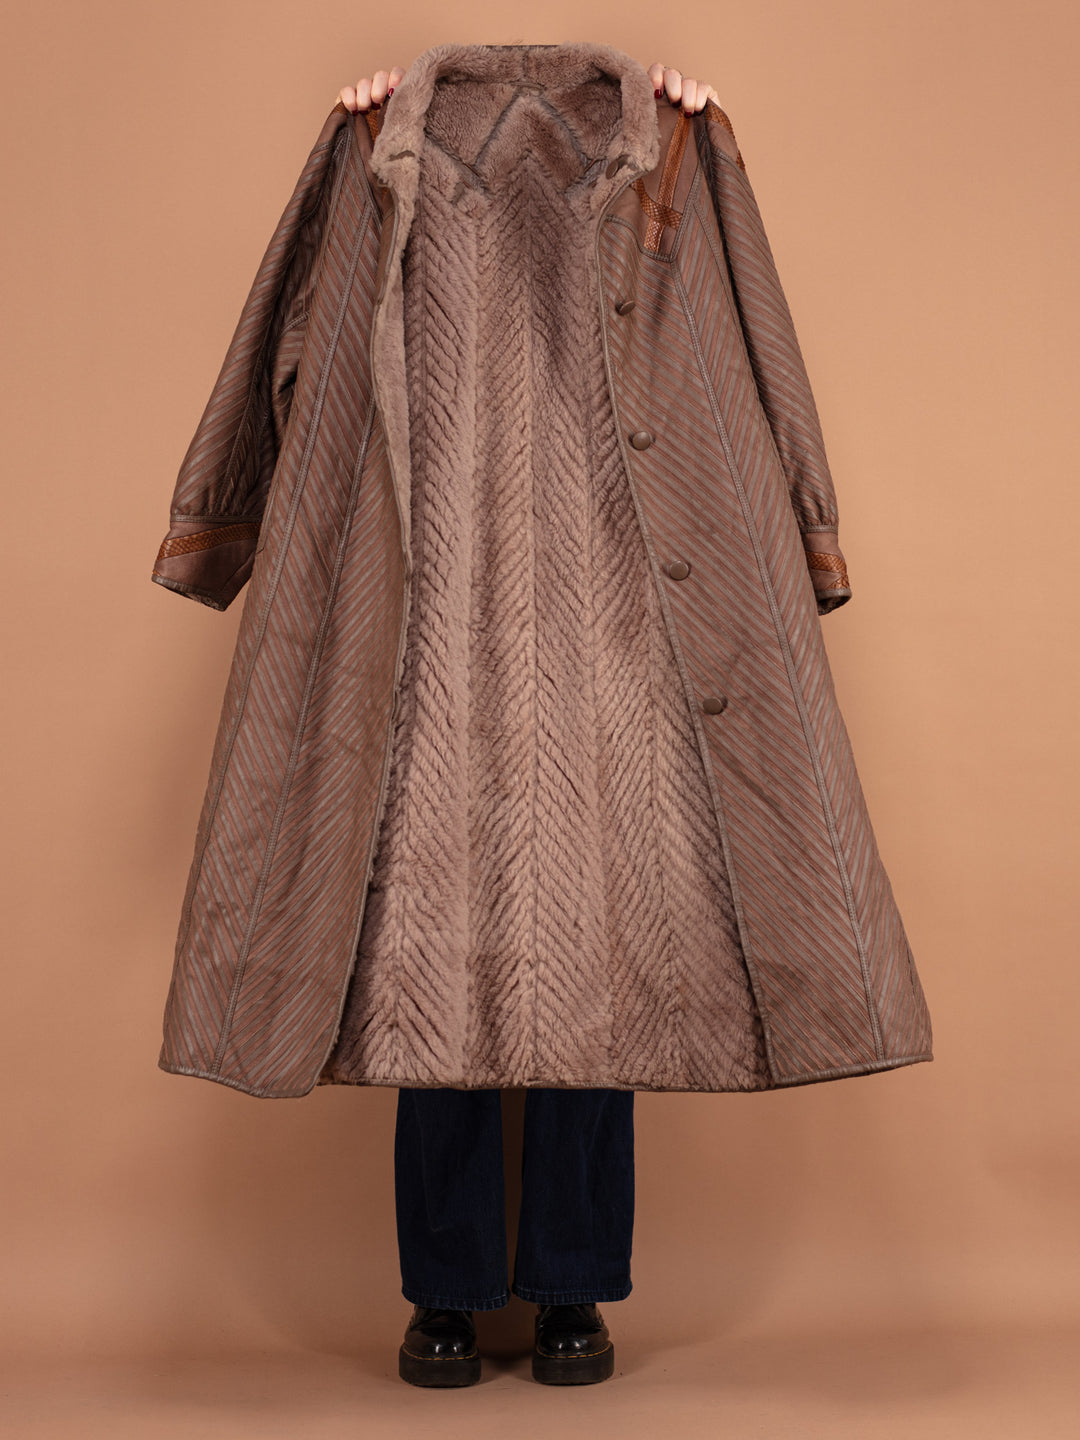 Sheepskin Maxi Coat 80's, Size L Warm Shearling Fur Coat, Brown Sheepskin Coat, Elegant Fur Coat, Penny Lane, Winter Outerwear, Pre-Loved